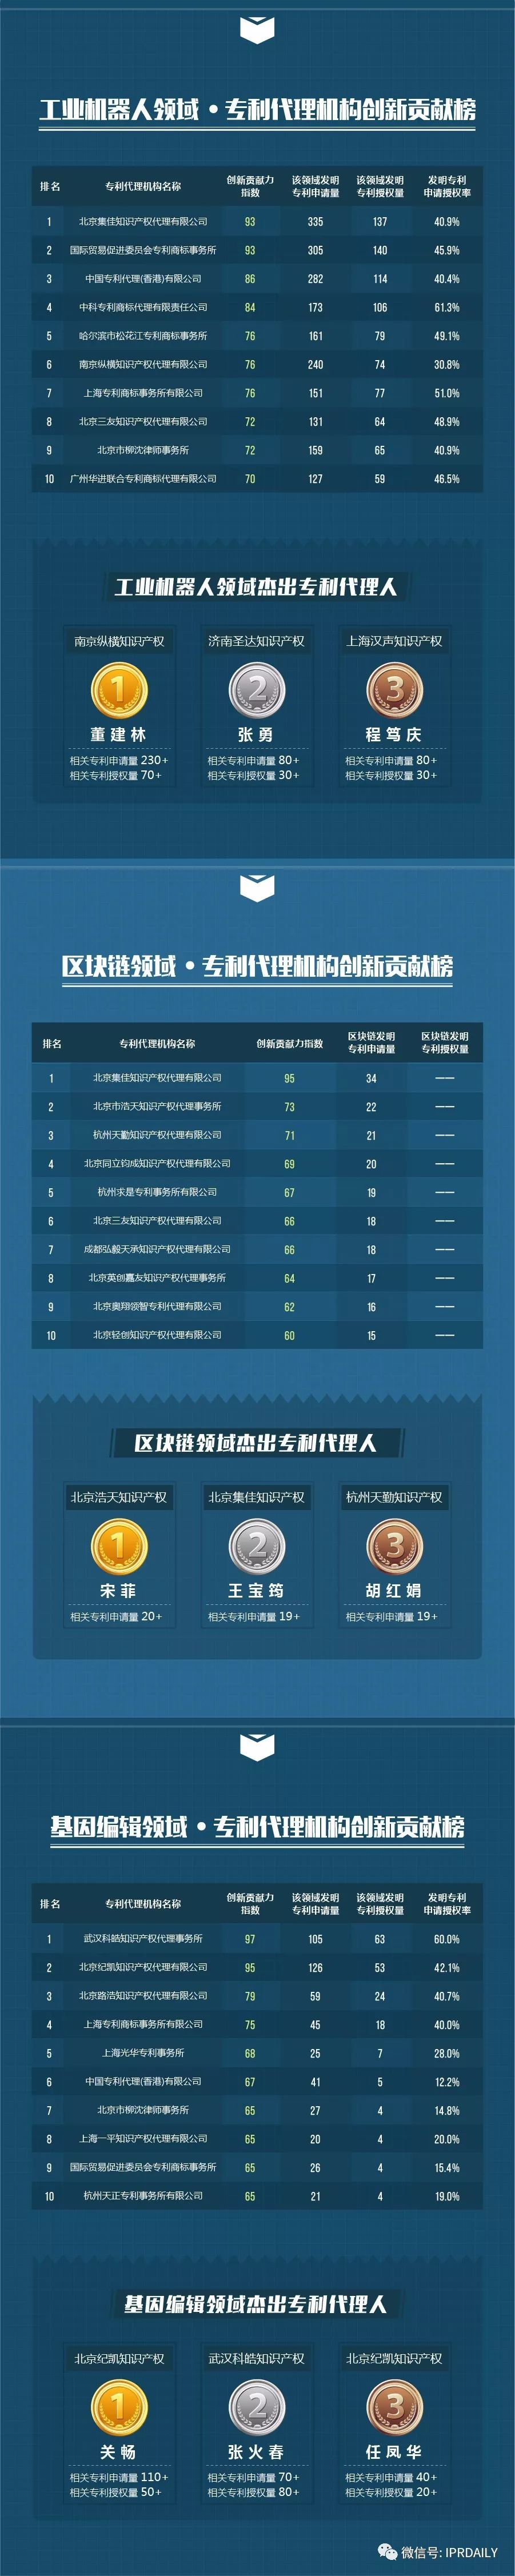 【致敬创新】2017中国各领域专利代理机构及代理人榜单